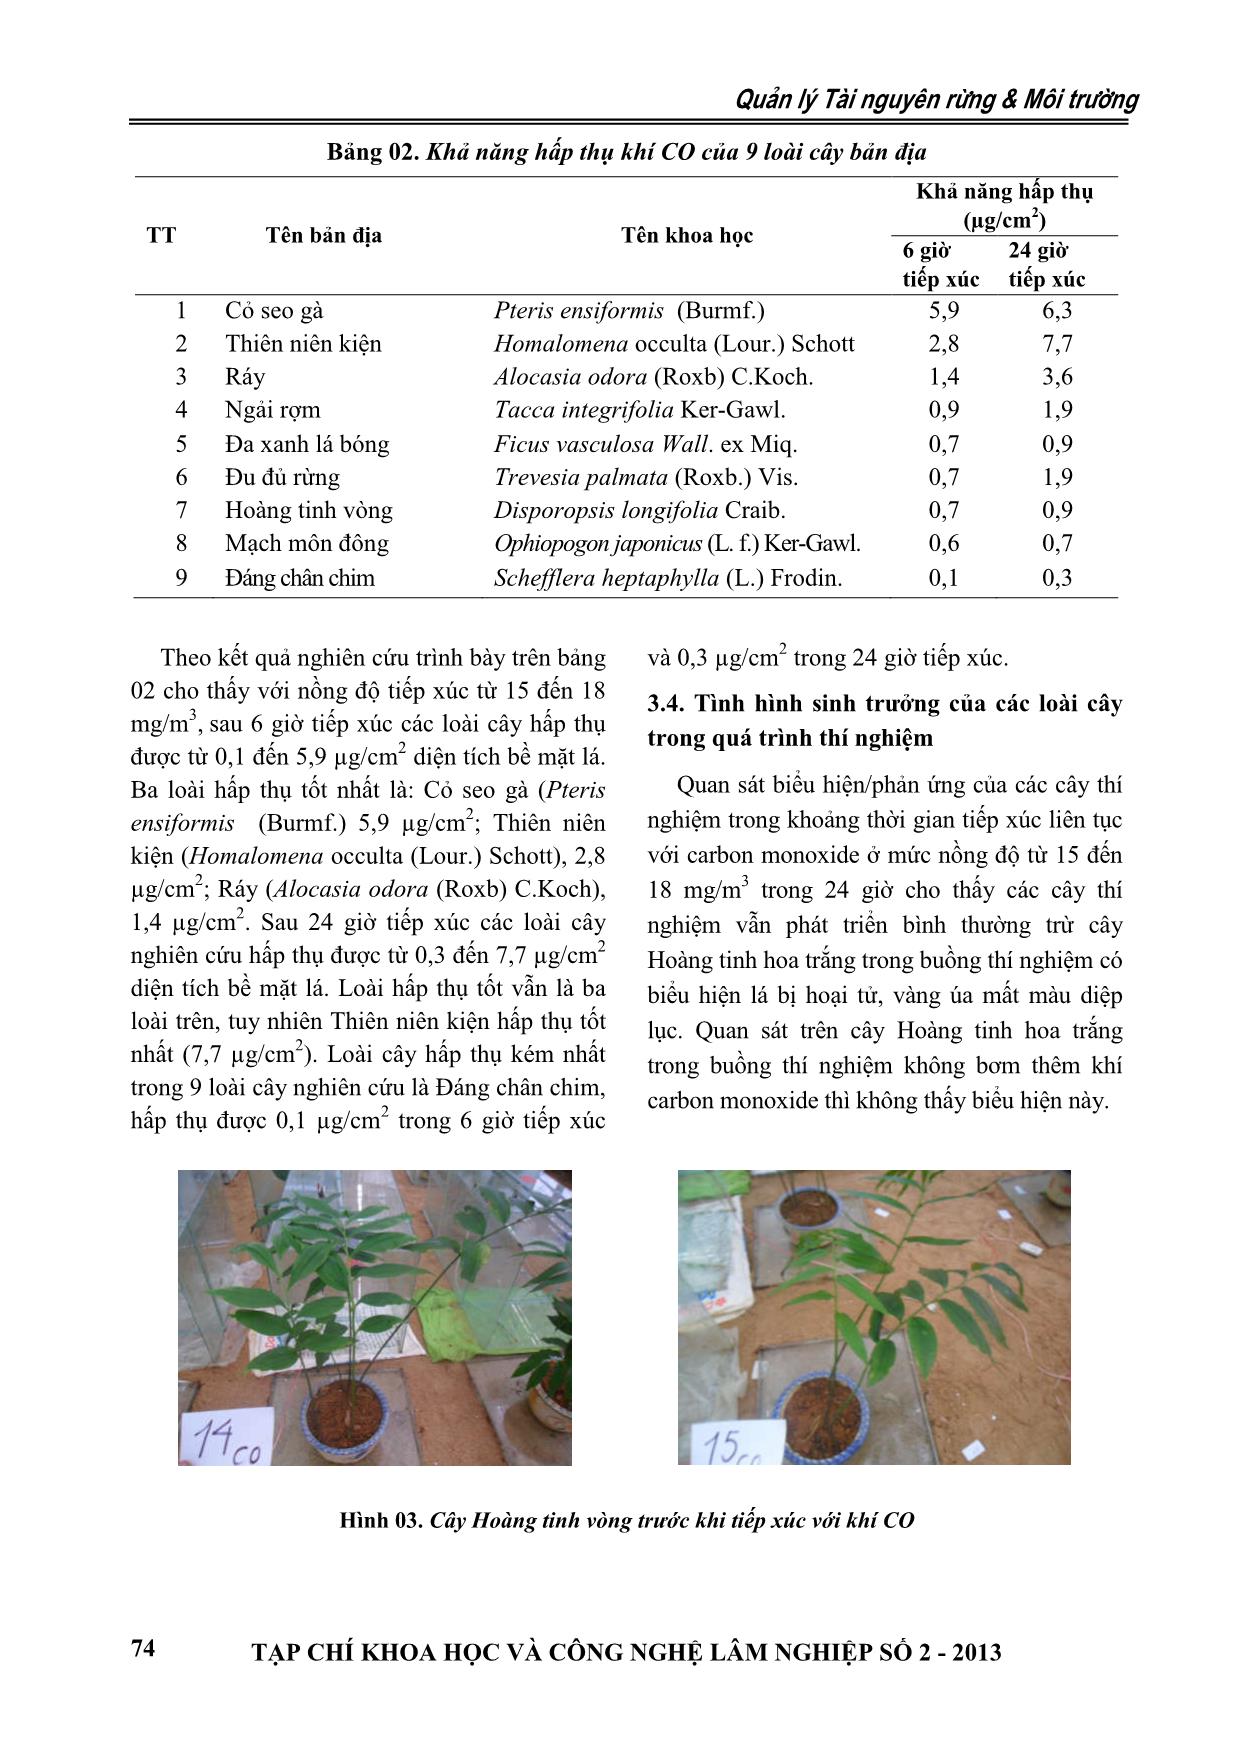 Nghiên cứu khả năng hấp thu khí Carbon monoxitde của một số loài cây bản địa trang 5